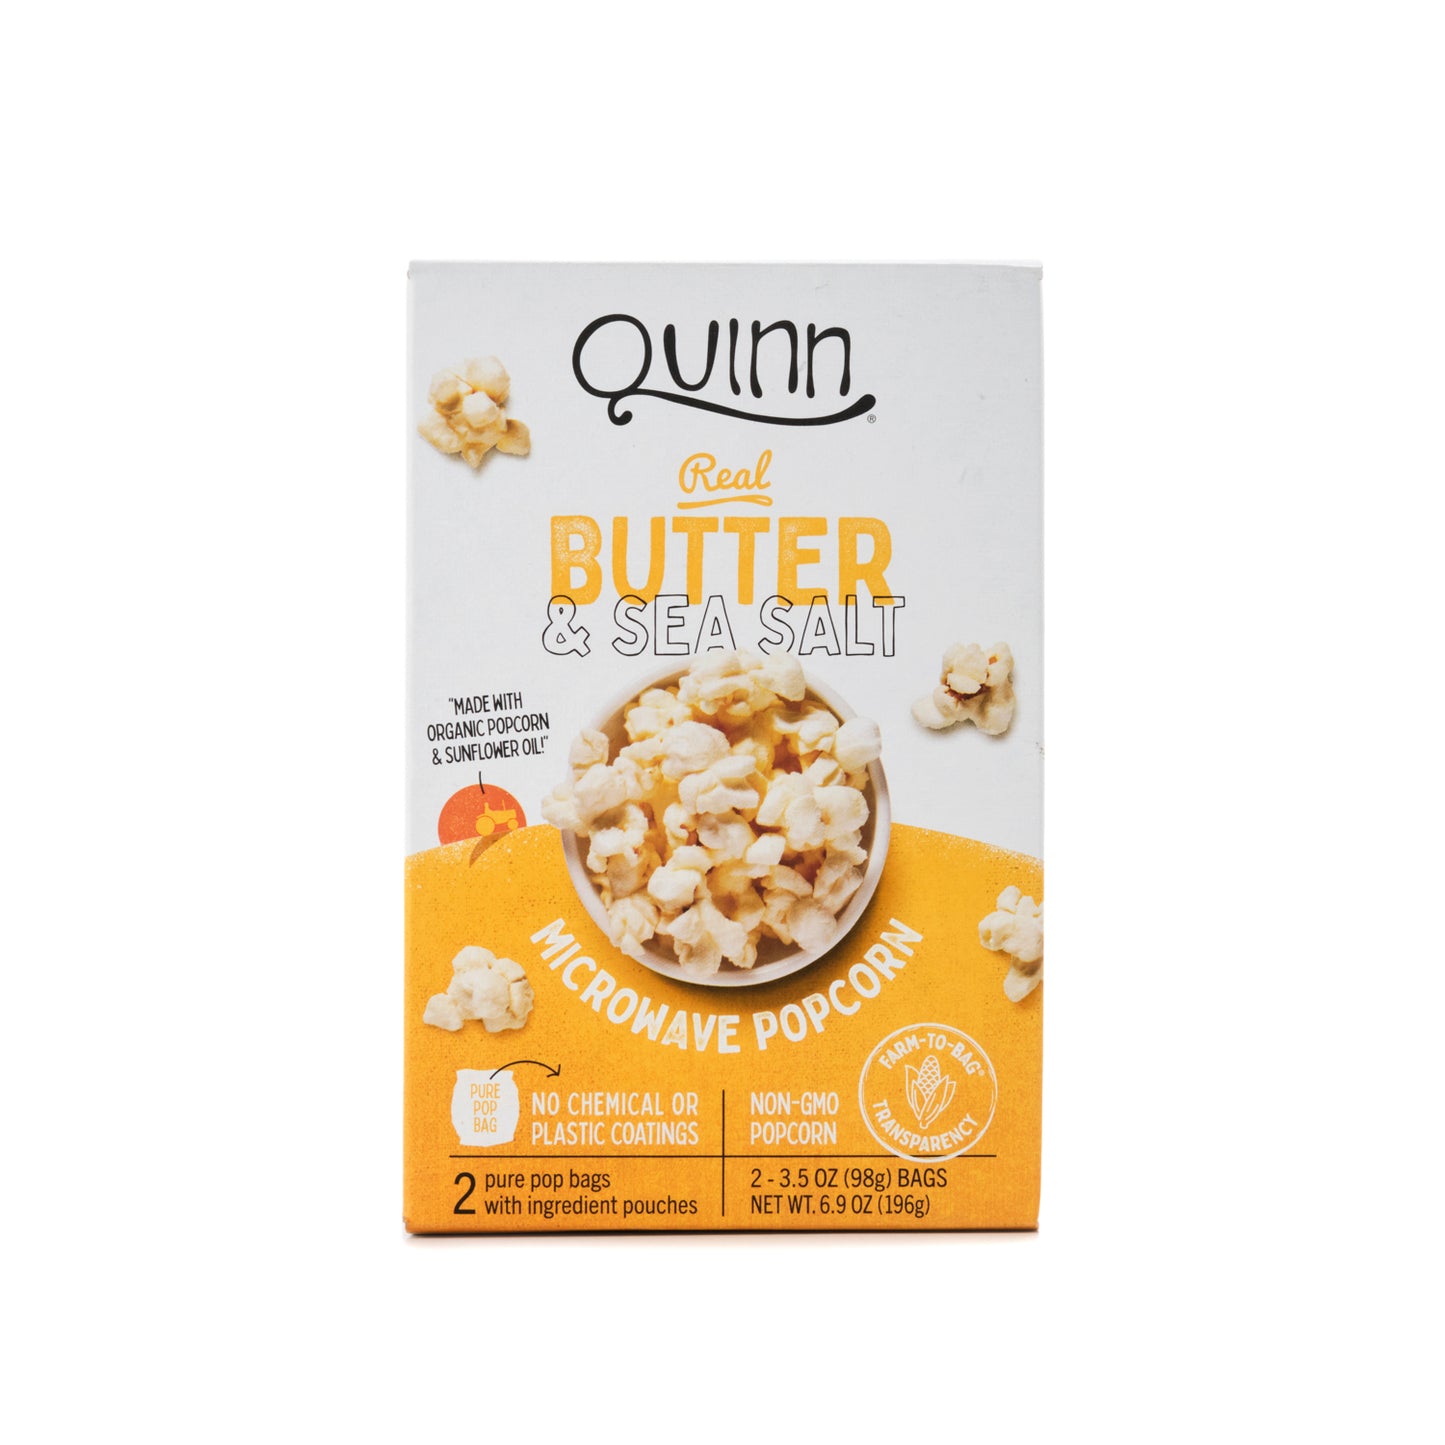 Quinn Butter & Sea Salt Microwave Popcorn 196g (2 x 98g bags)